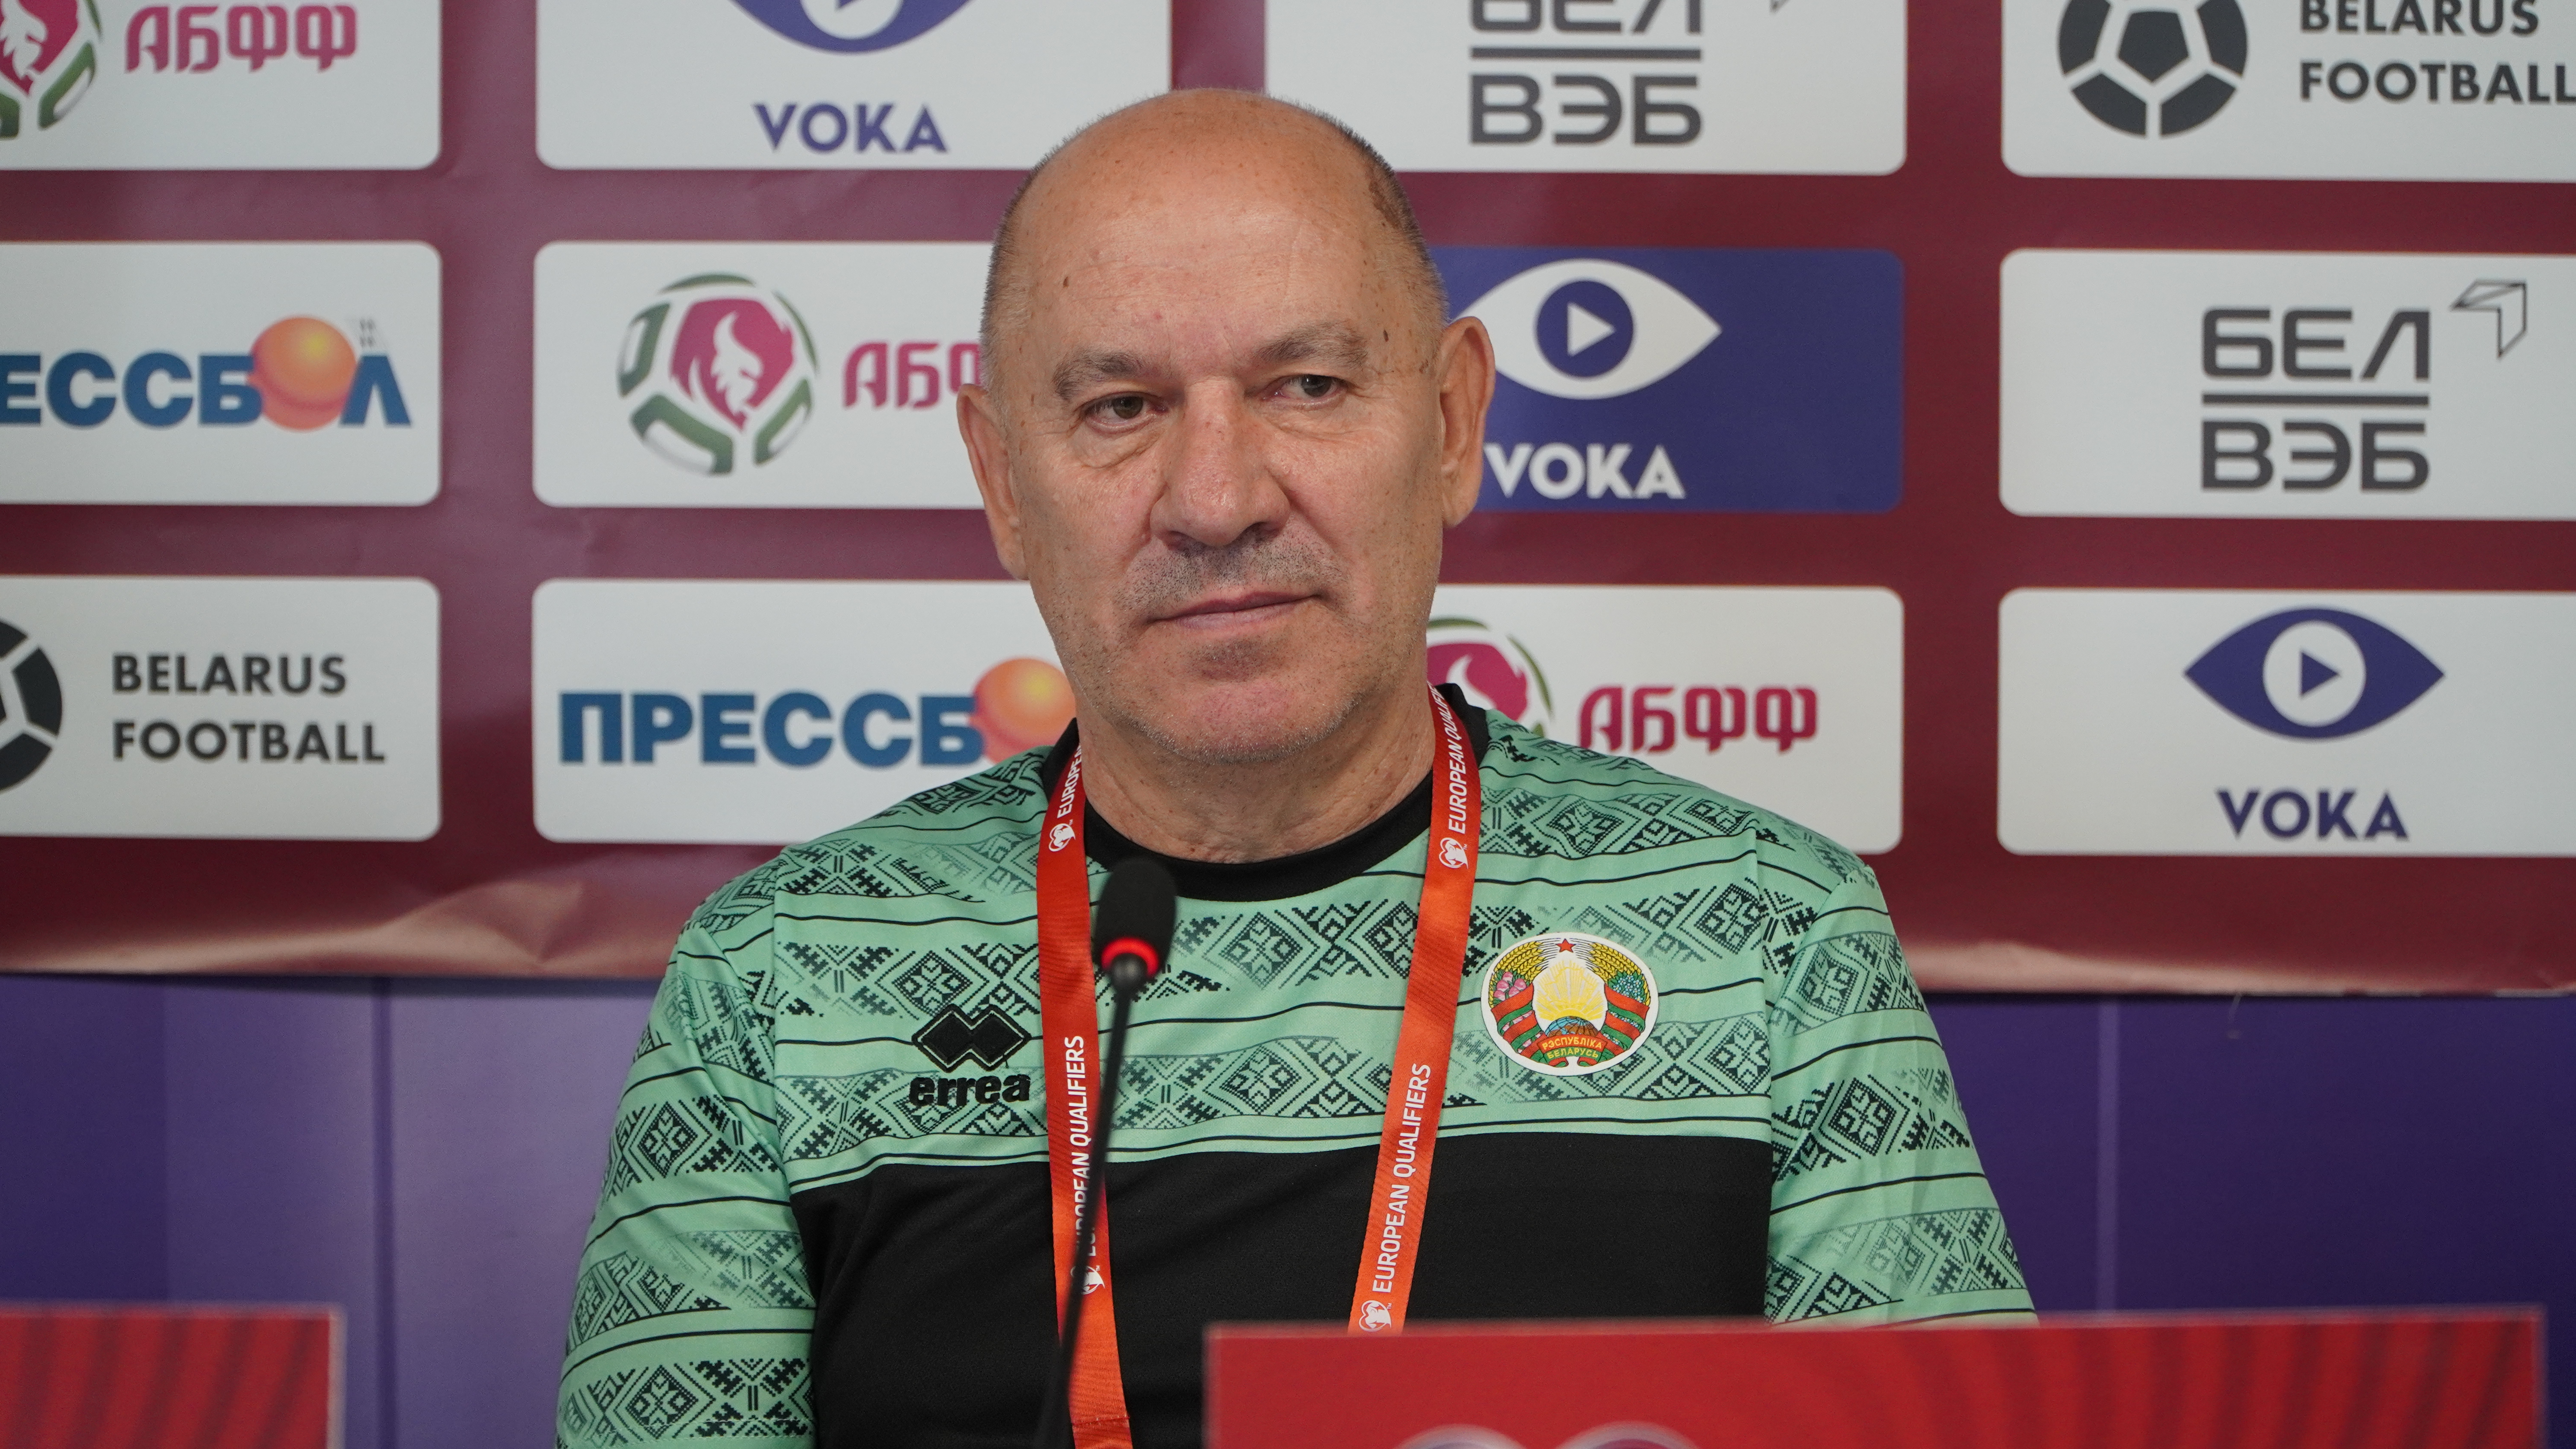 Сегодня, 19 июня, сборная Беларуси по футболу сыграет с Косова. Георгий Кондратьев сделан несколько важных заявлений